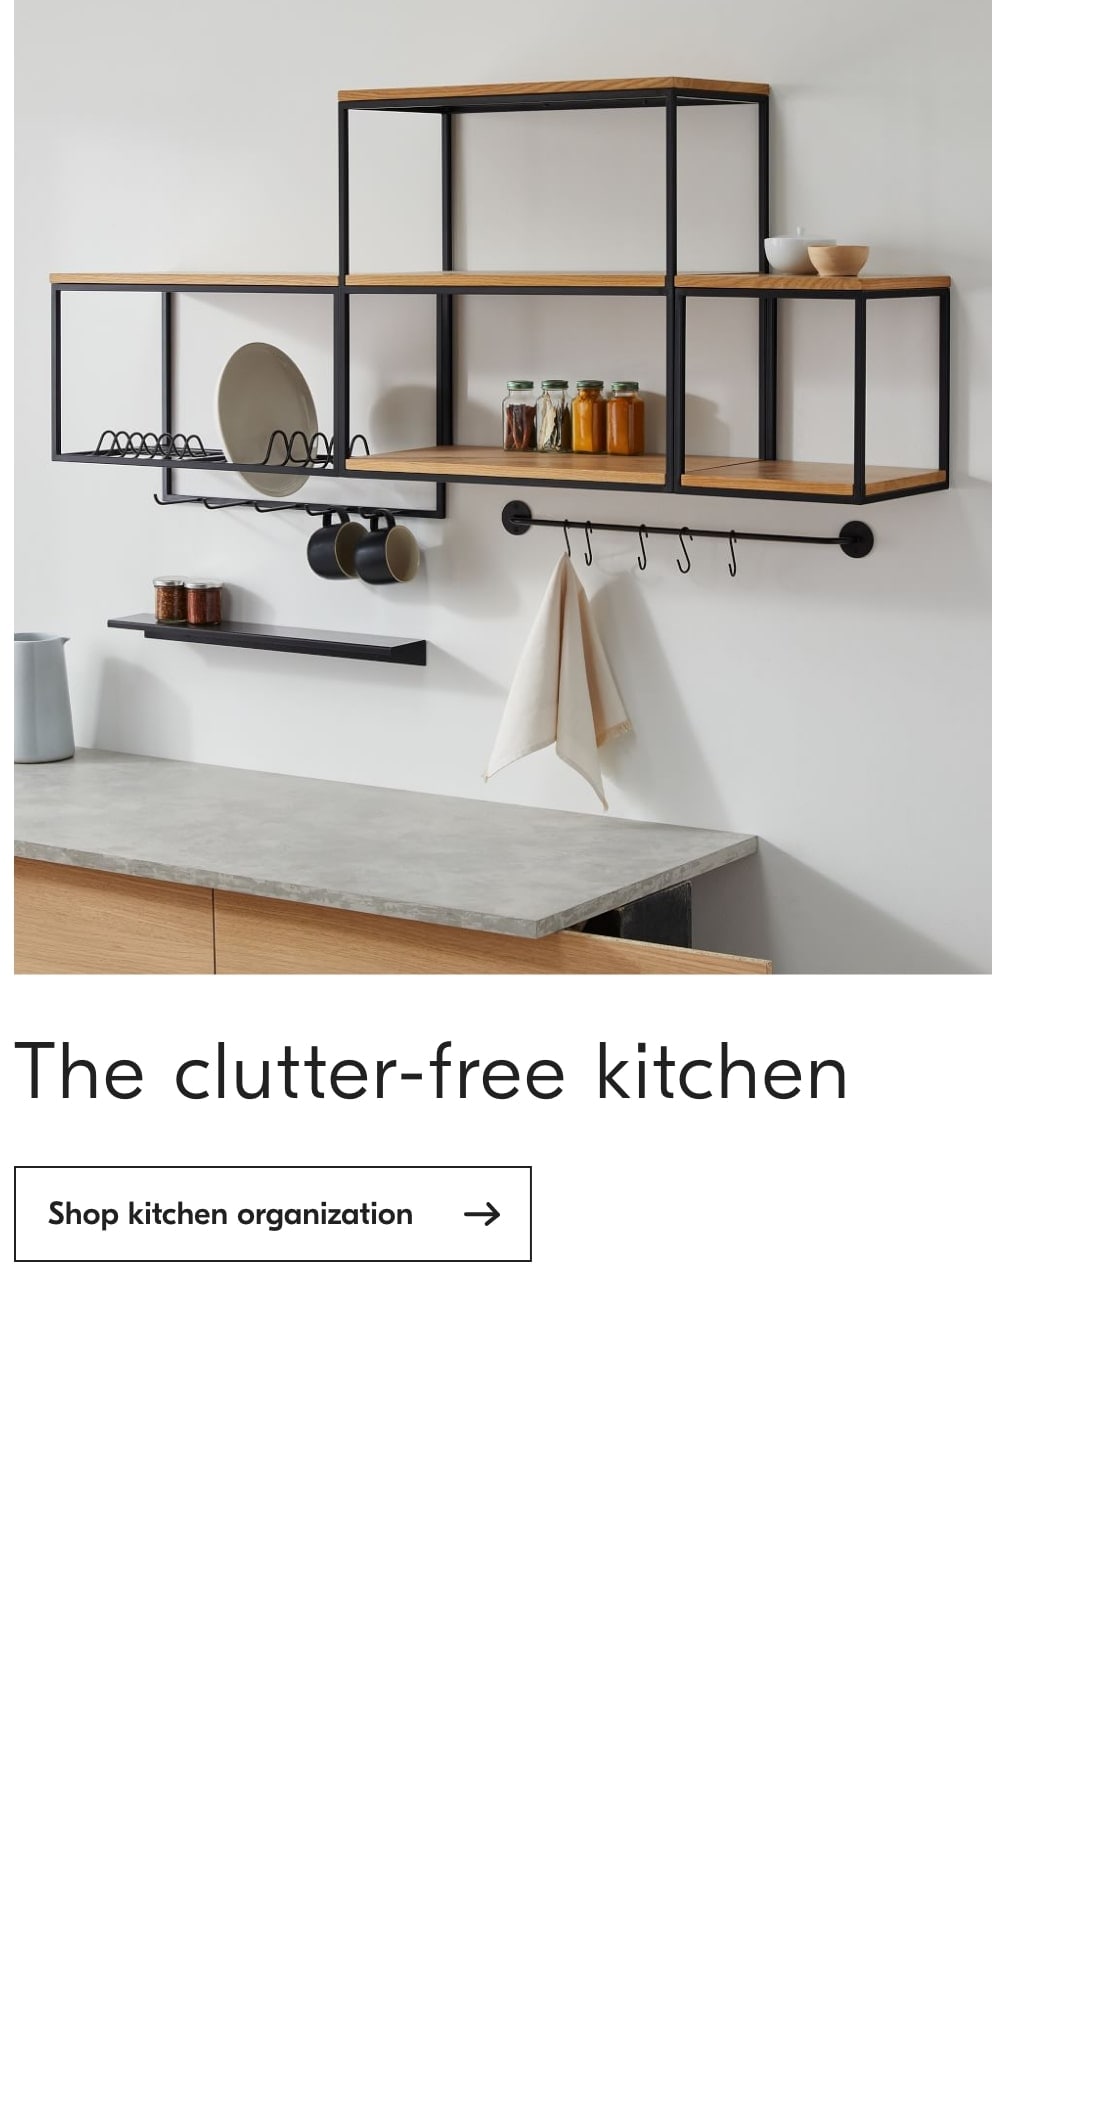 Shop kitchen organization